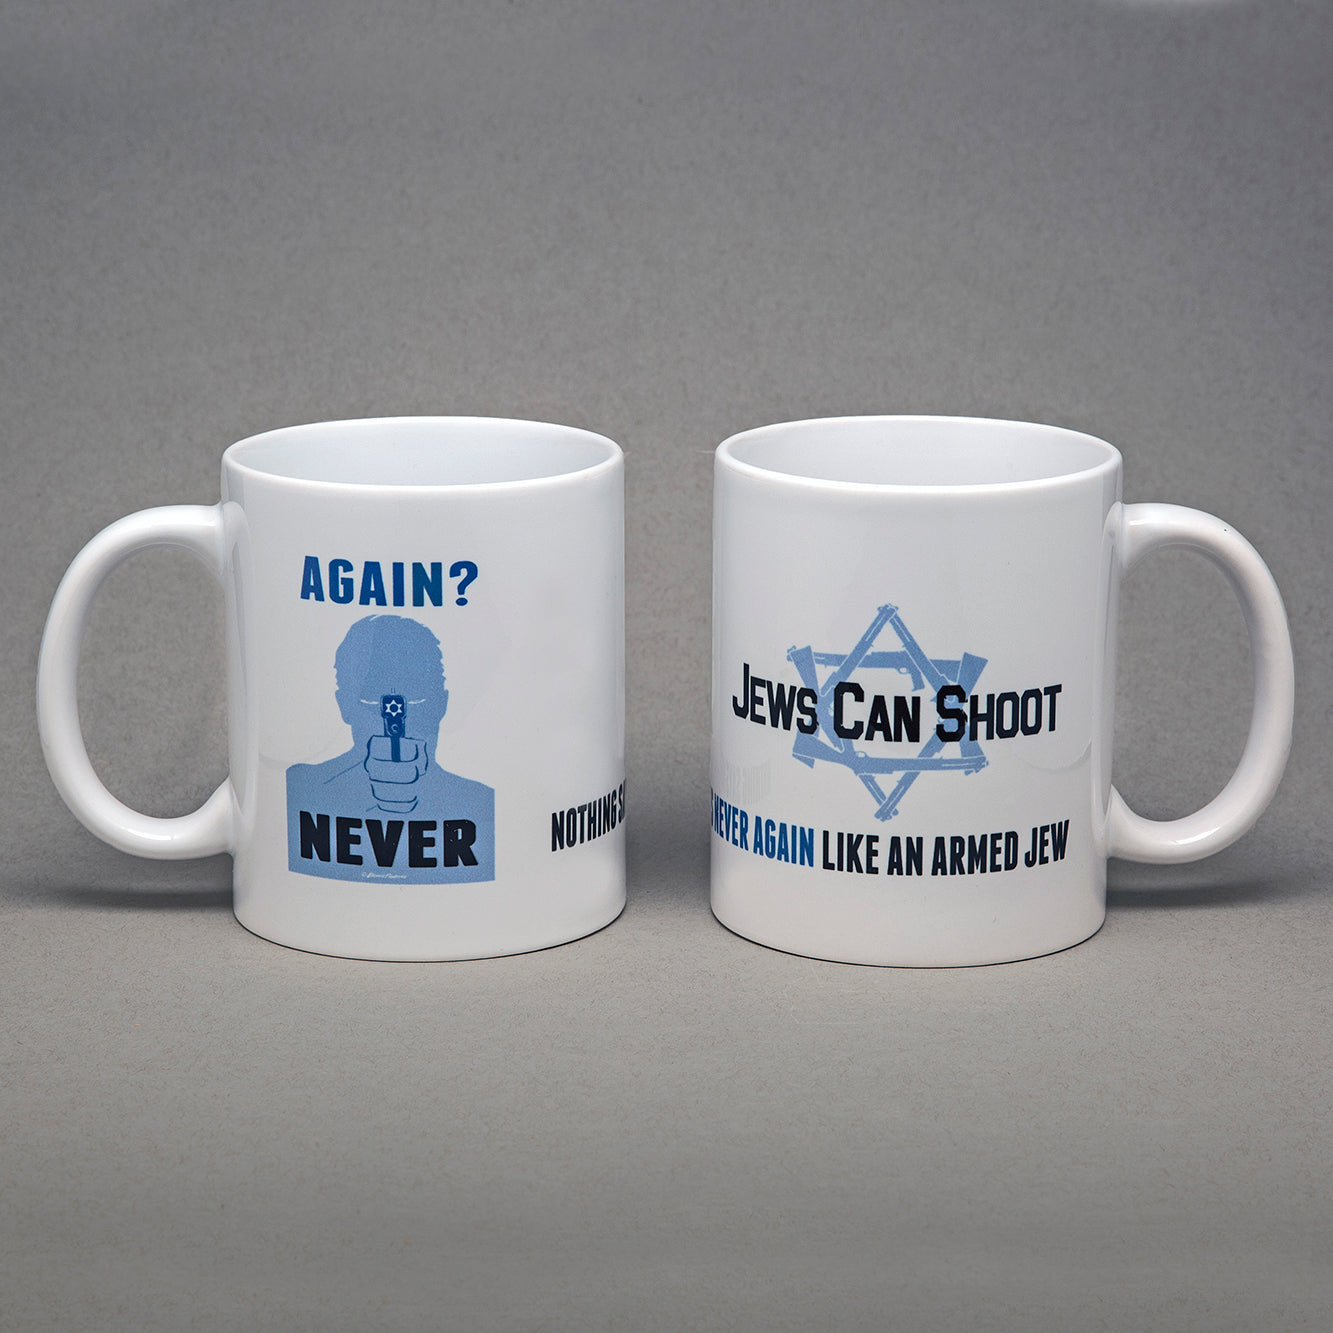 "Again? Never" 11 oz ceramic mug